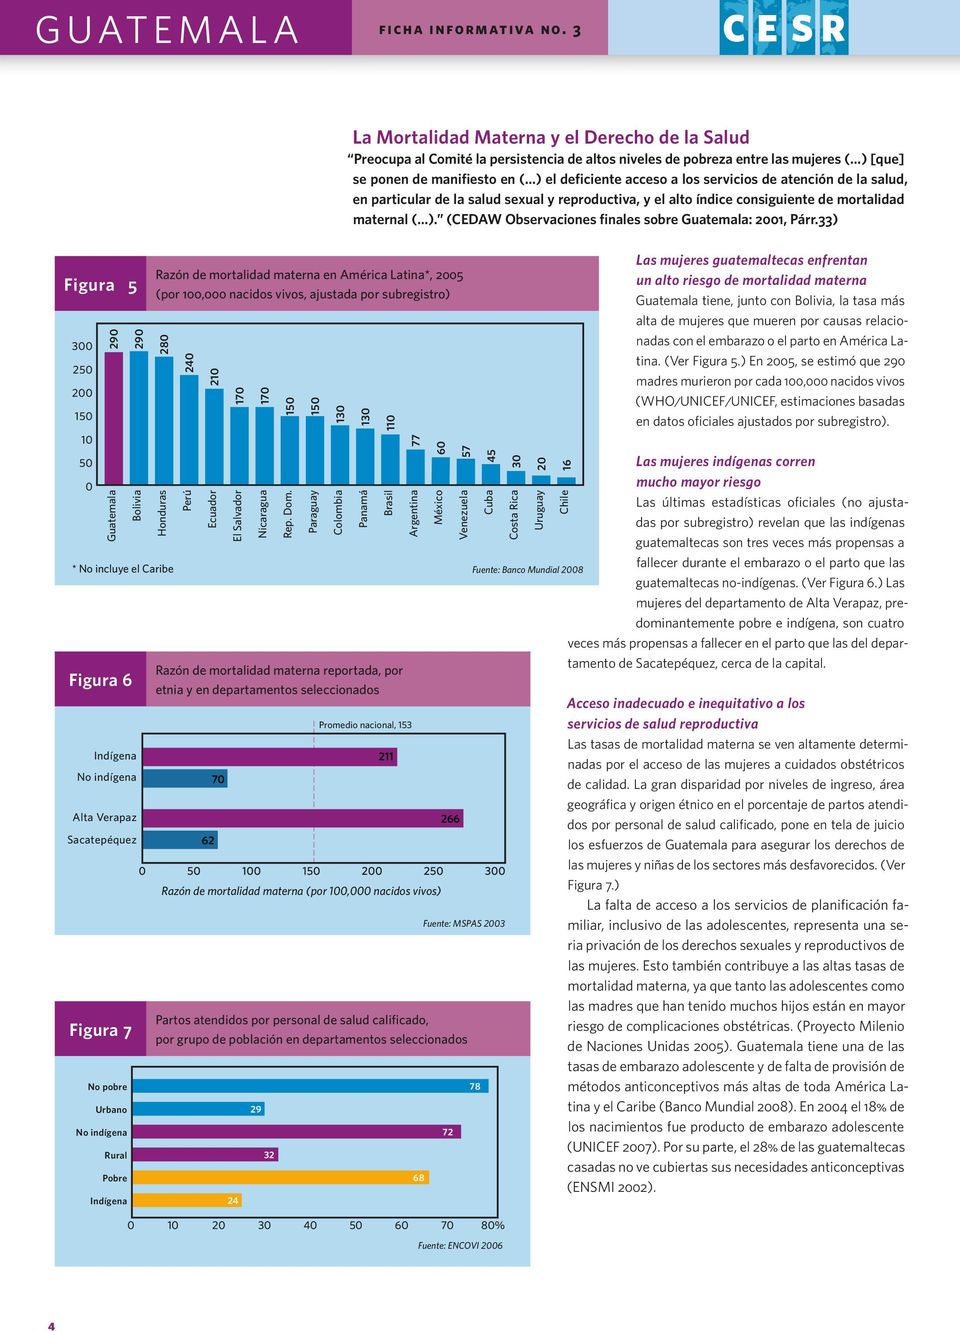 servicios de atención de la salud, en particular de la salud sexual y reproductiva, y el alto índice consiguiente de mortalidad maternal ( ). (CEDAW Observaciones finales sobre Guatemala: 2001, Párr.